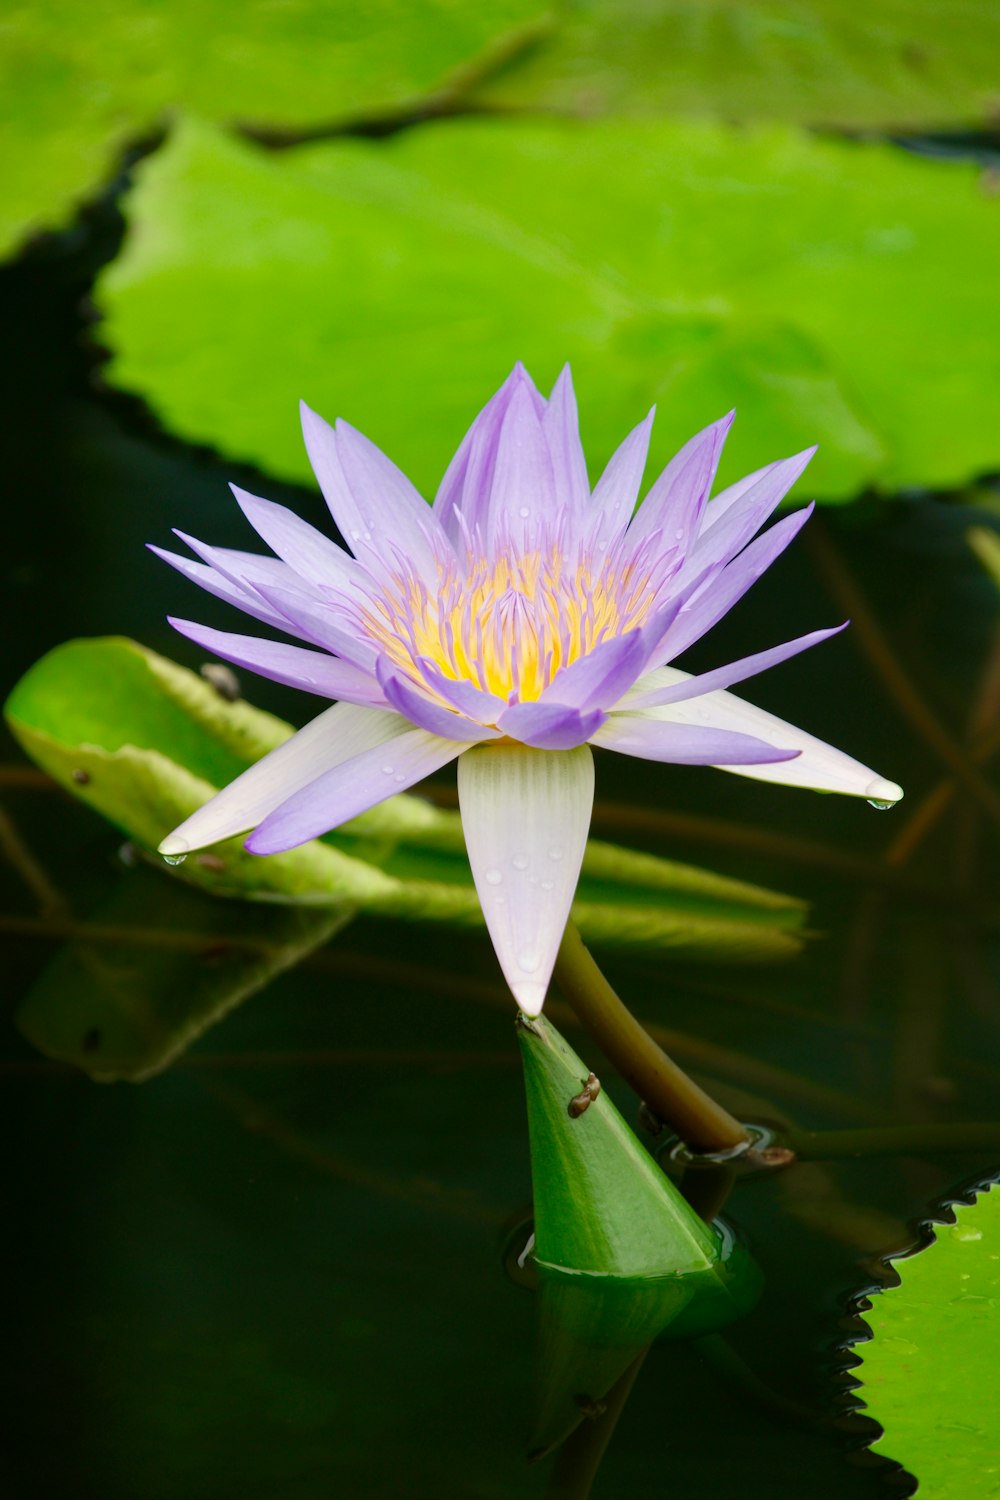 purple lotus flower blooming